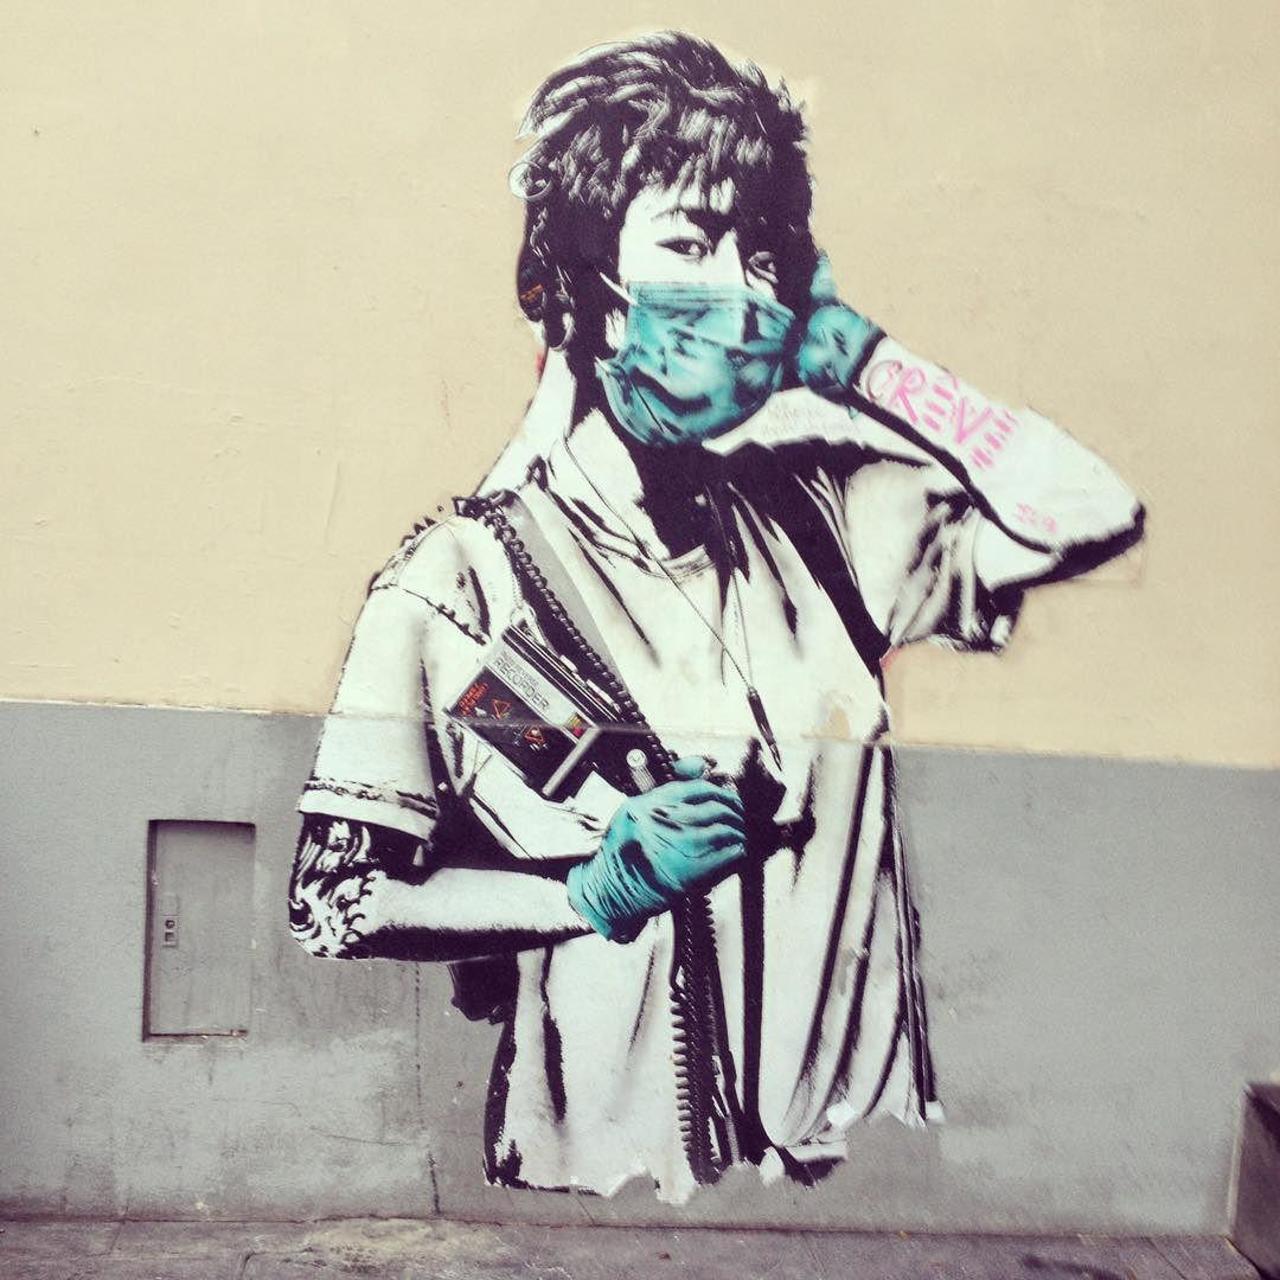 circumjacent_fr: #Paris #graffiti photo by pariskindnessproject http://ift.tt/1RkxAcP #StreetArt https://t.co/K0b8hWgbRJ